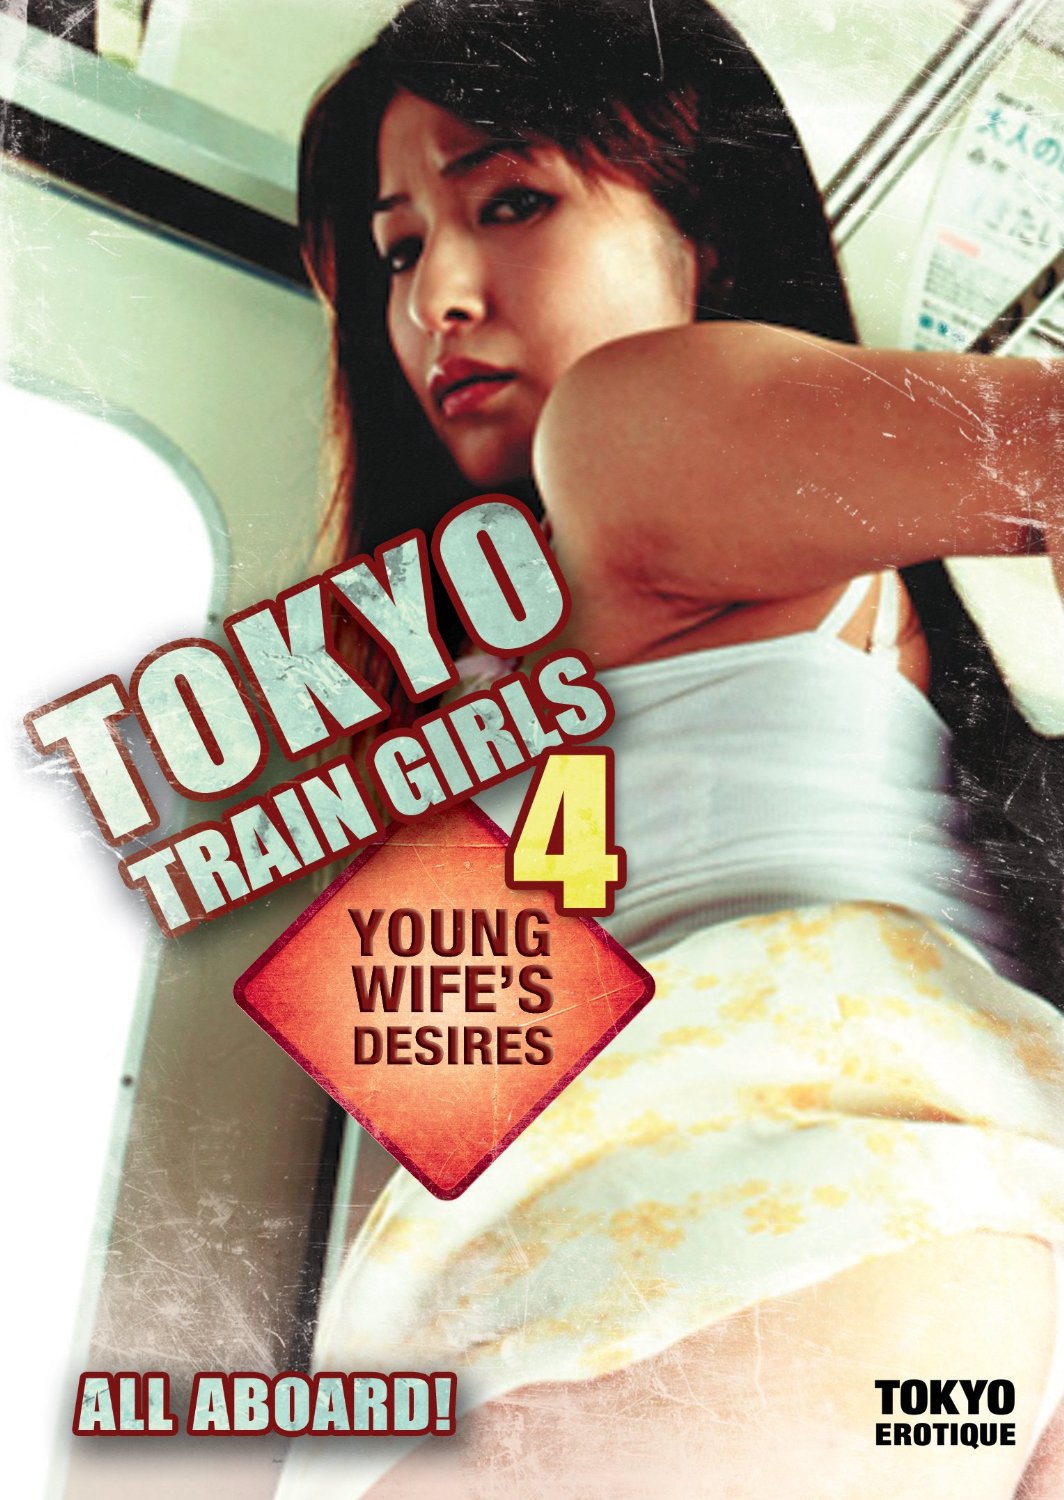 Tokyo Train Girls 4: Young Wife's Desires (2006) Screenshot 1